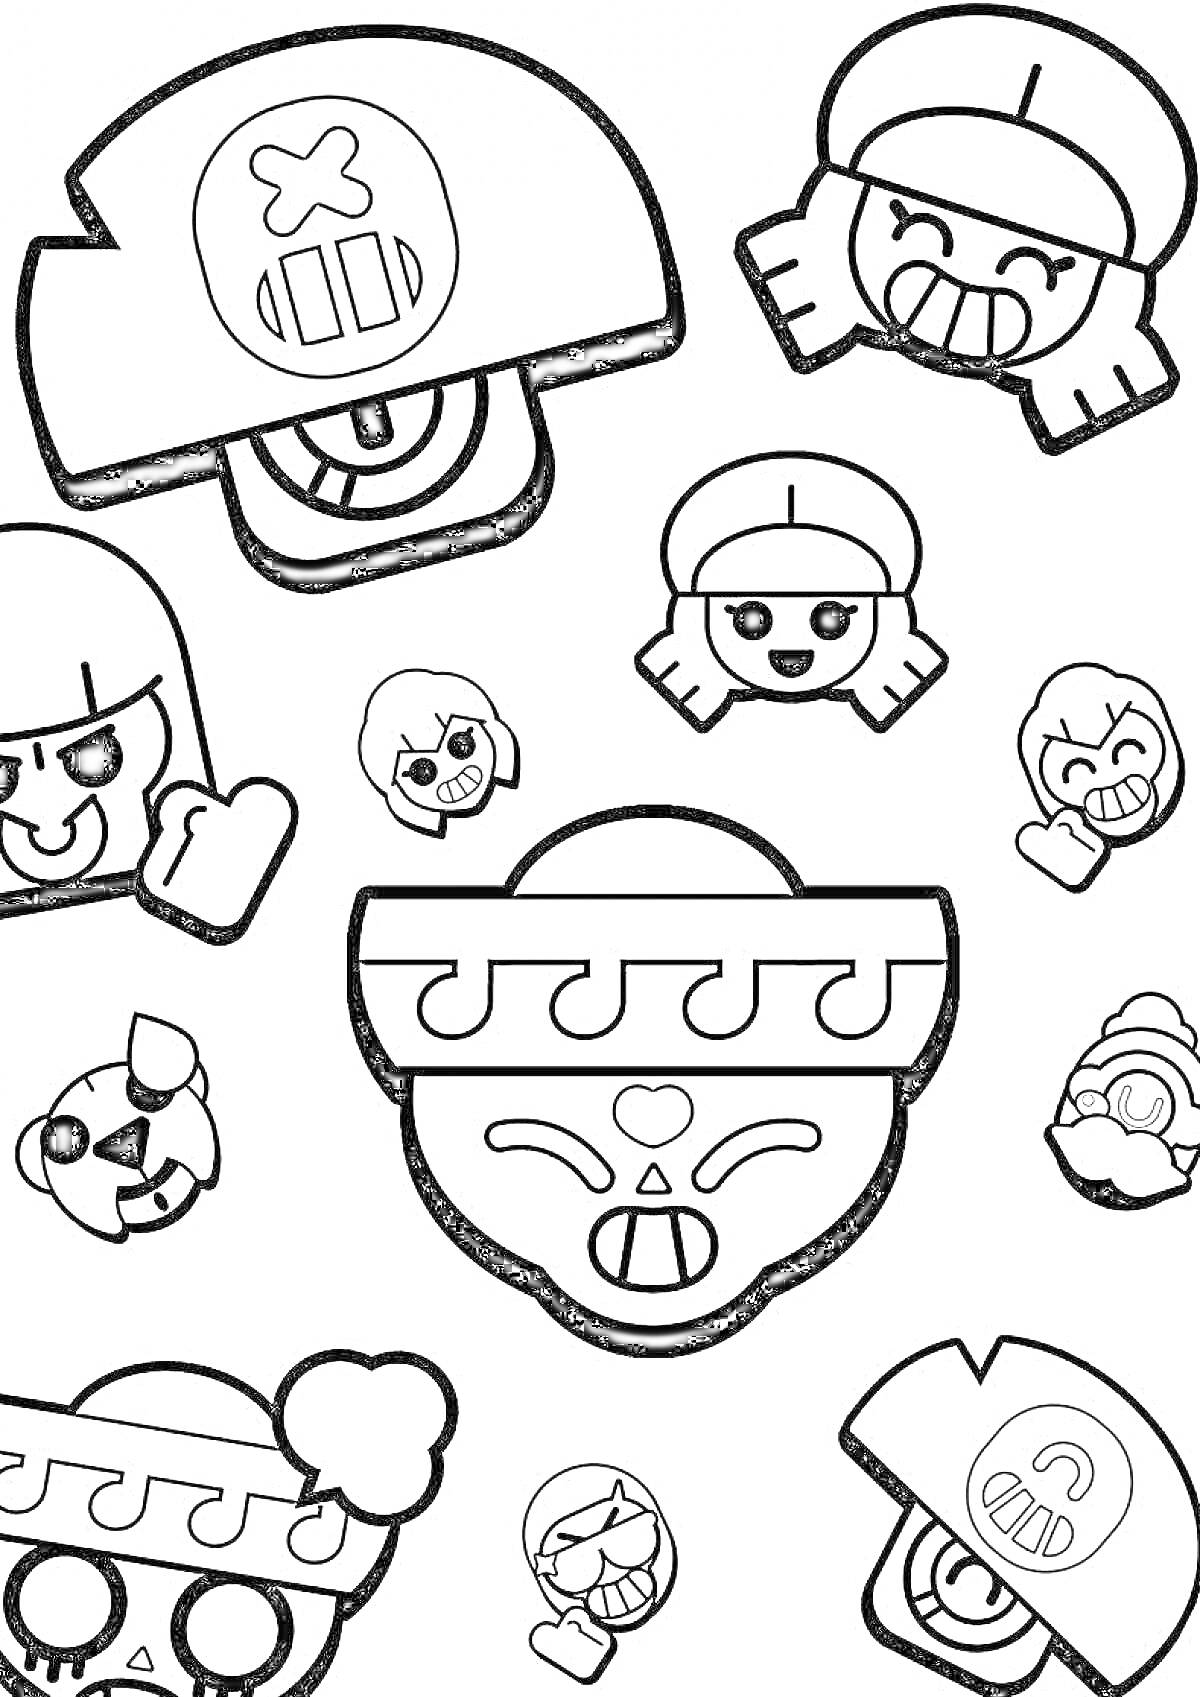 Раскраска Раскраска с эмодзи персонажей из игры Brawl Stars: шляпы, лица с разными выражениями, символы